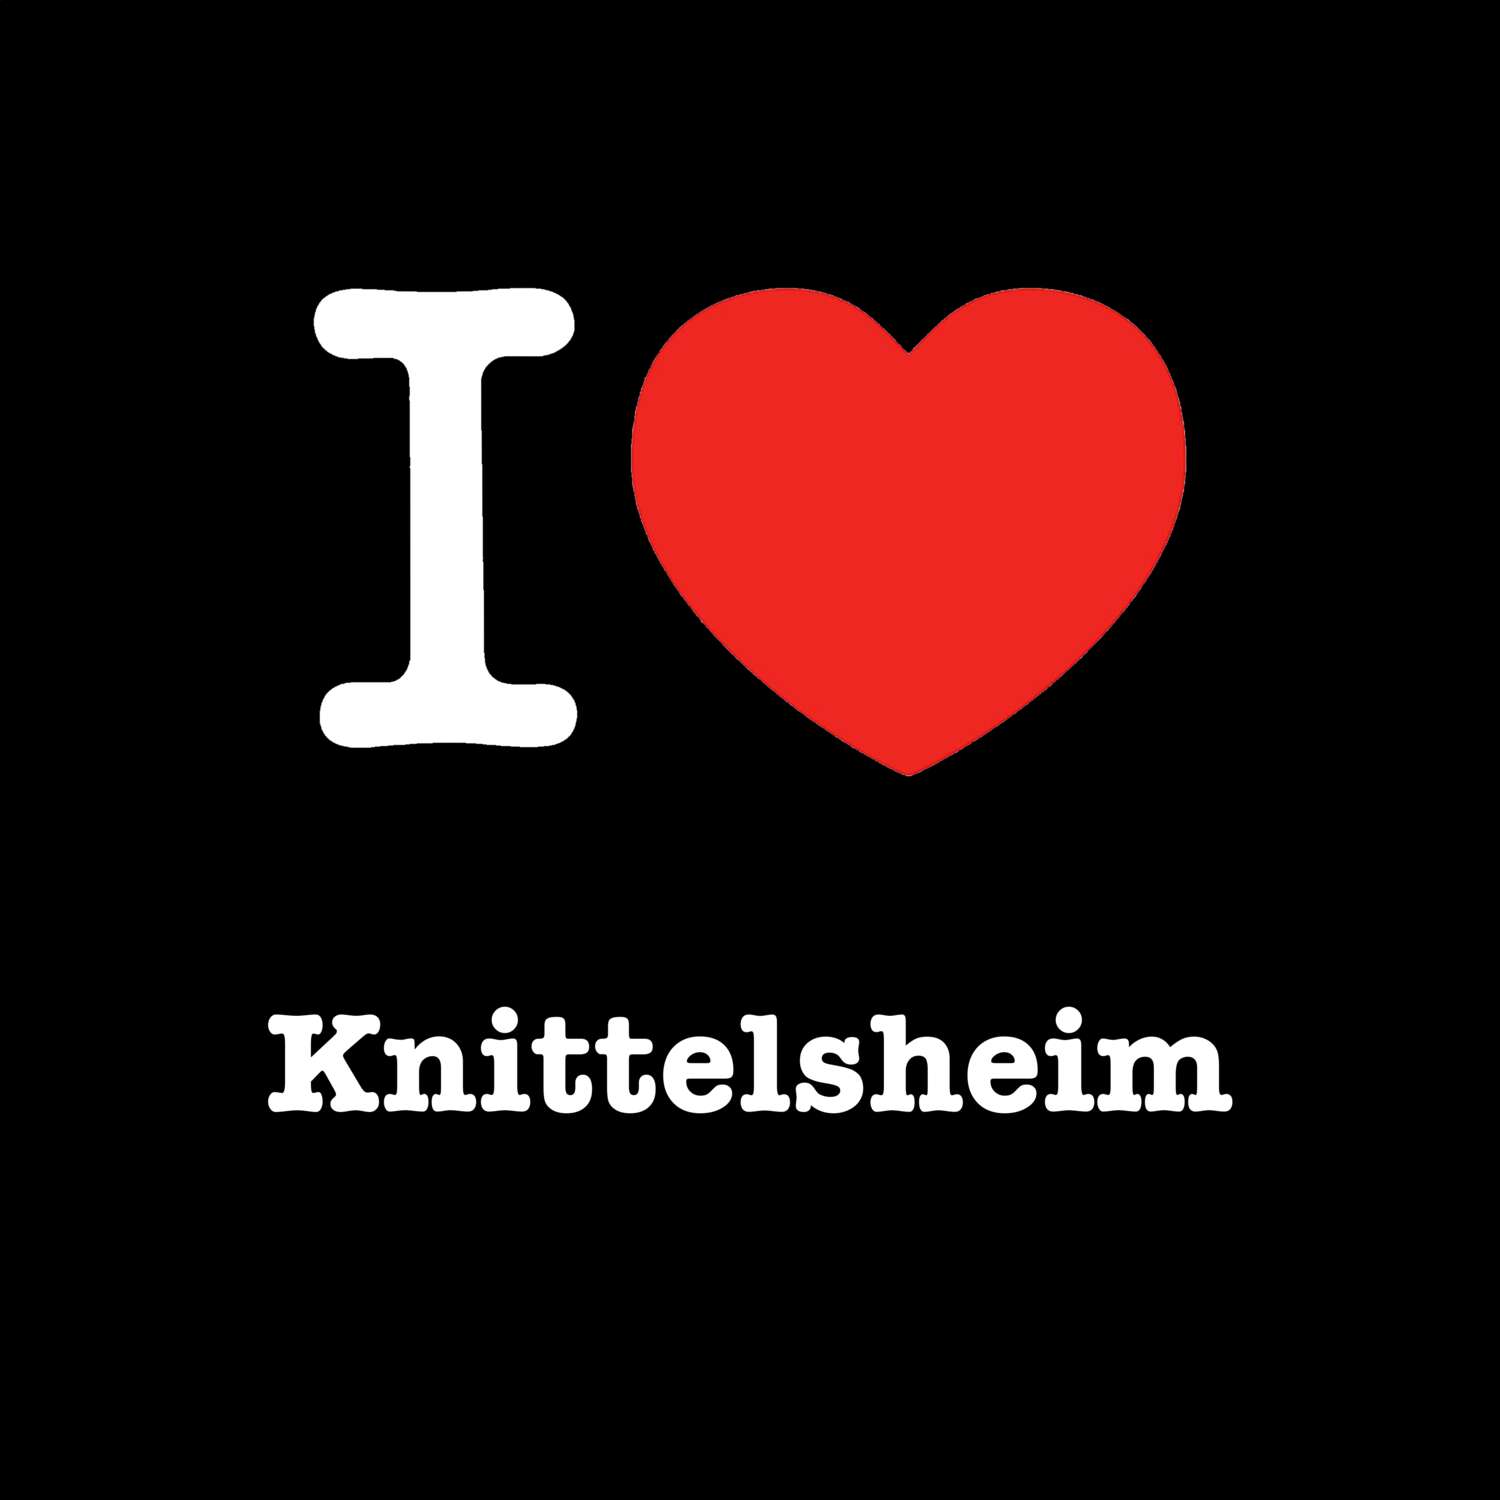 Knittelsheim T-Shirt »I love«